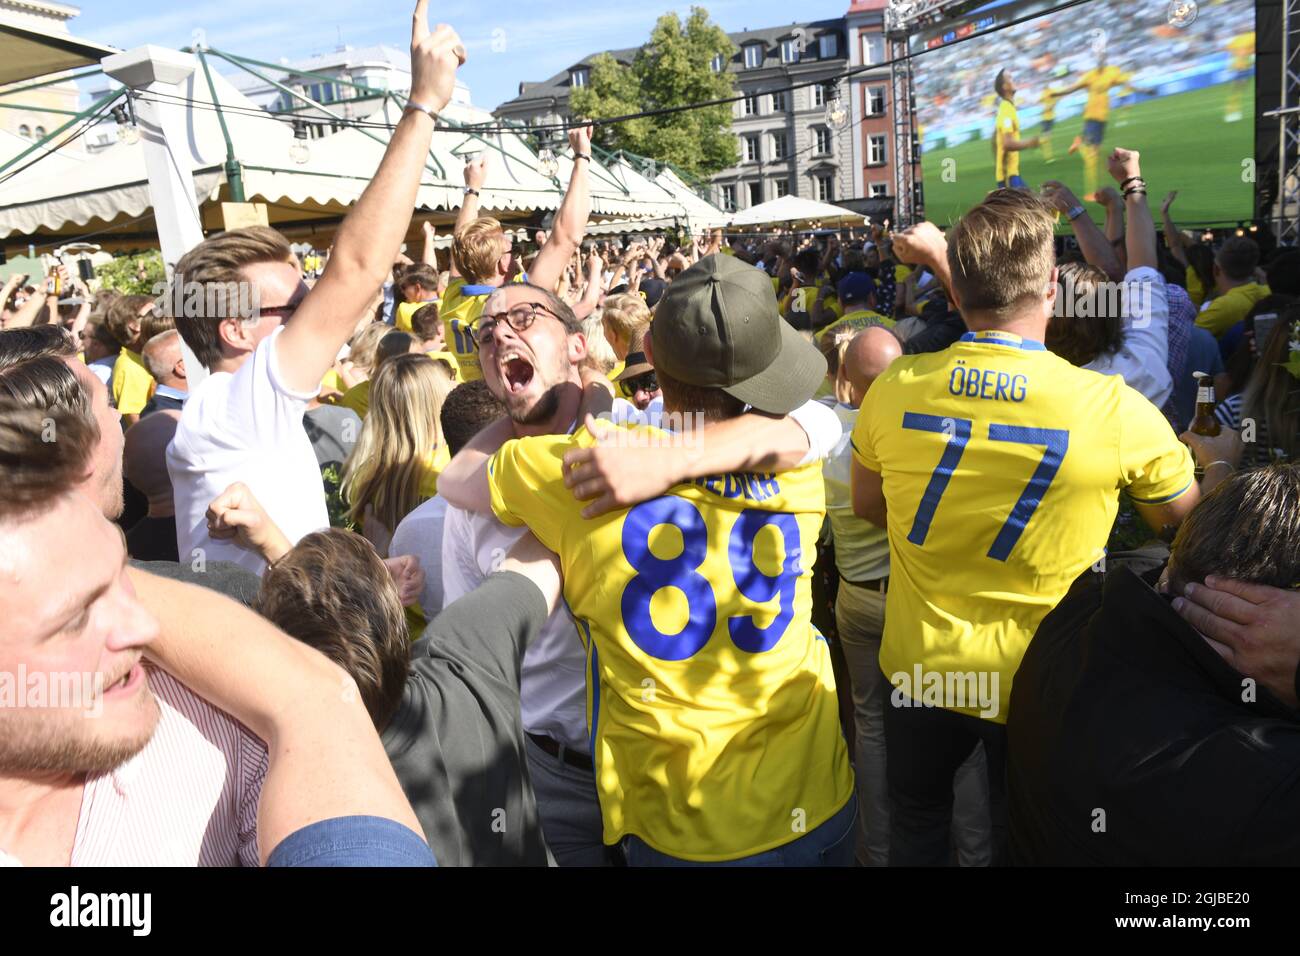 Schwedische Fußballfans feiern, nachdem Schweden beim Fußballspiel der Gruppe F in Russland 2018 gegen Mexiko geschossen hat, als sie das Spiel am 27. Juni 2018 auf einer großen Leinwand im Freien in Norra Bantorget im Zentrum von Stockholm, Schweden, ansehen. Foto: Fredrik Sandberg / TT / Code 10080 Stockfoto